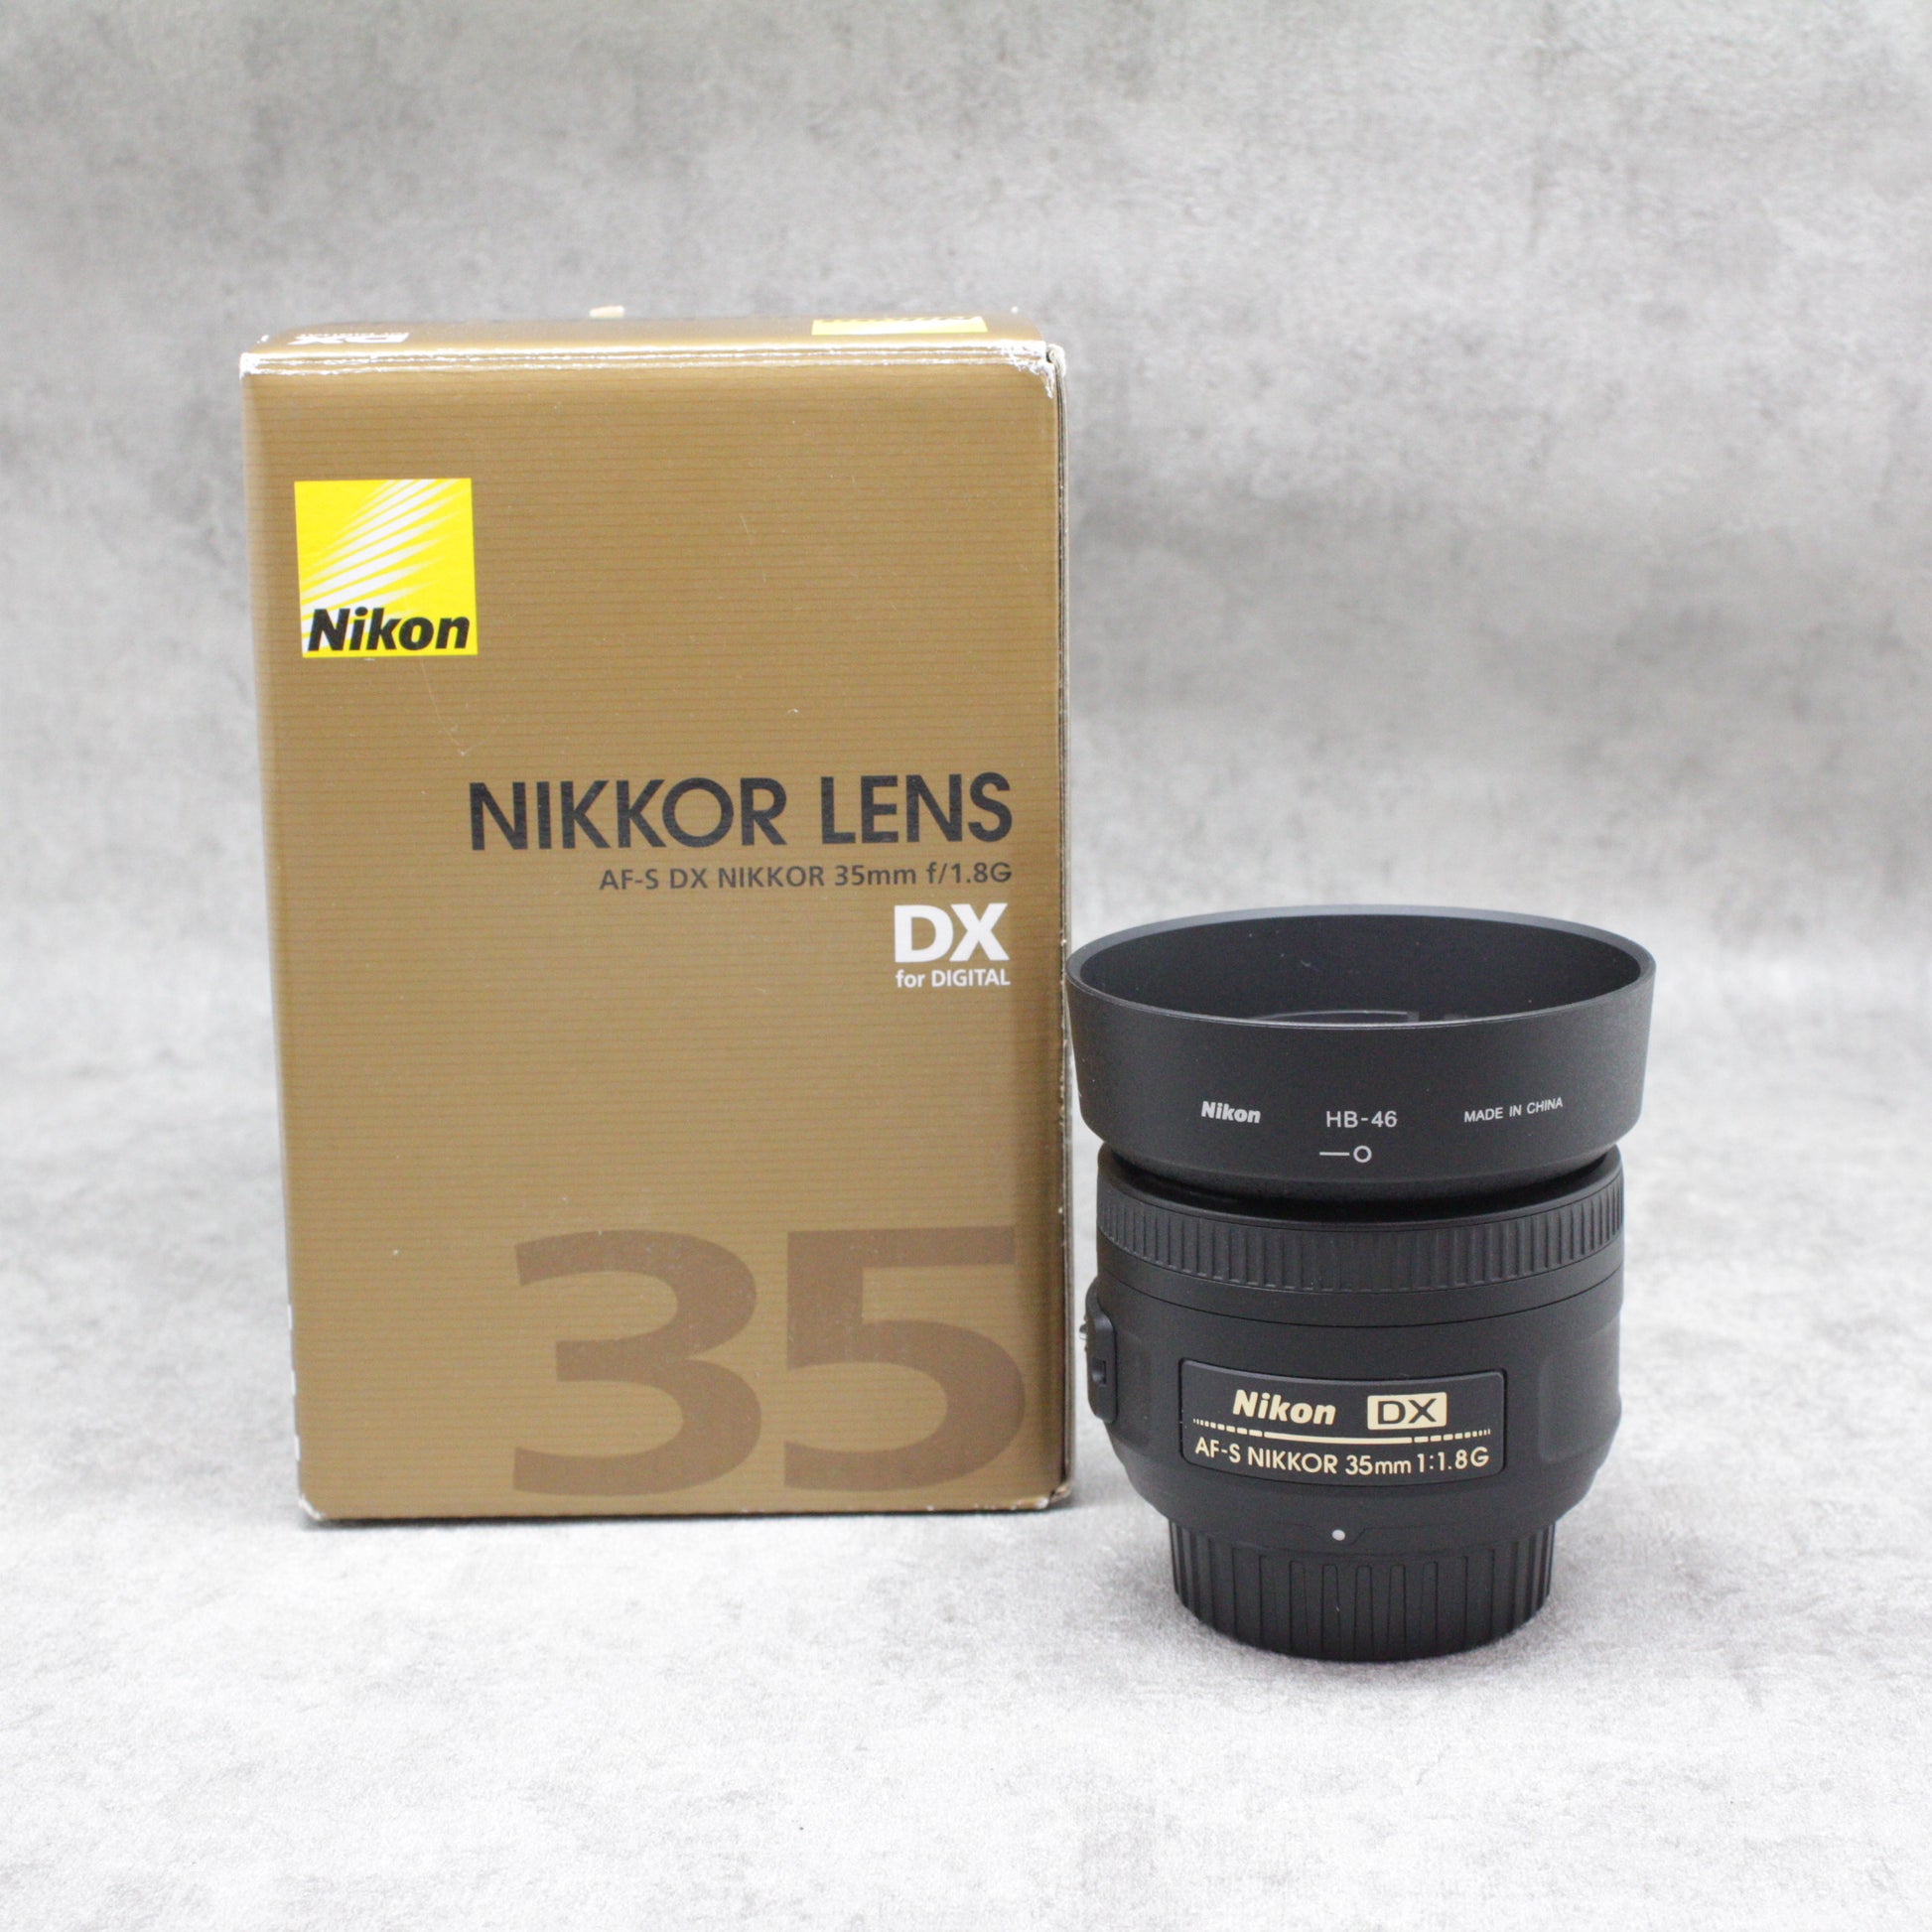 NIkon AF-S DX NIKKOR 35mm f/1.8G